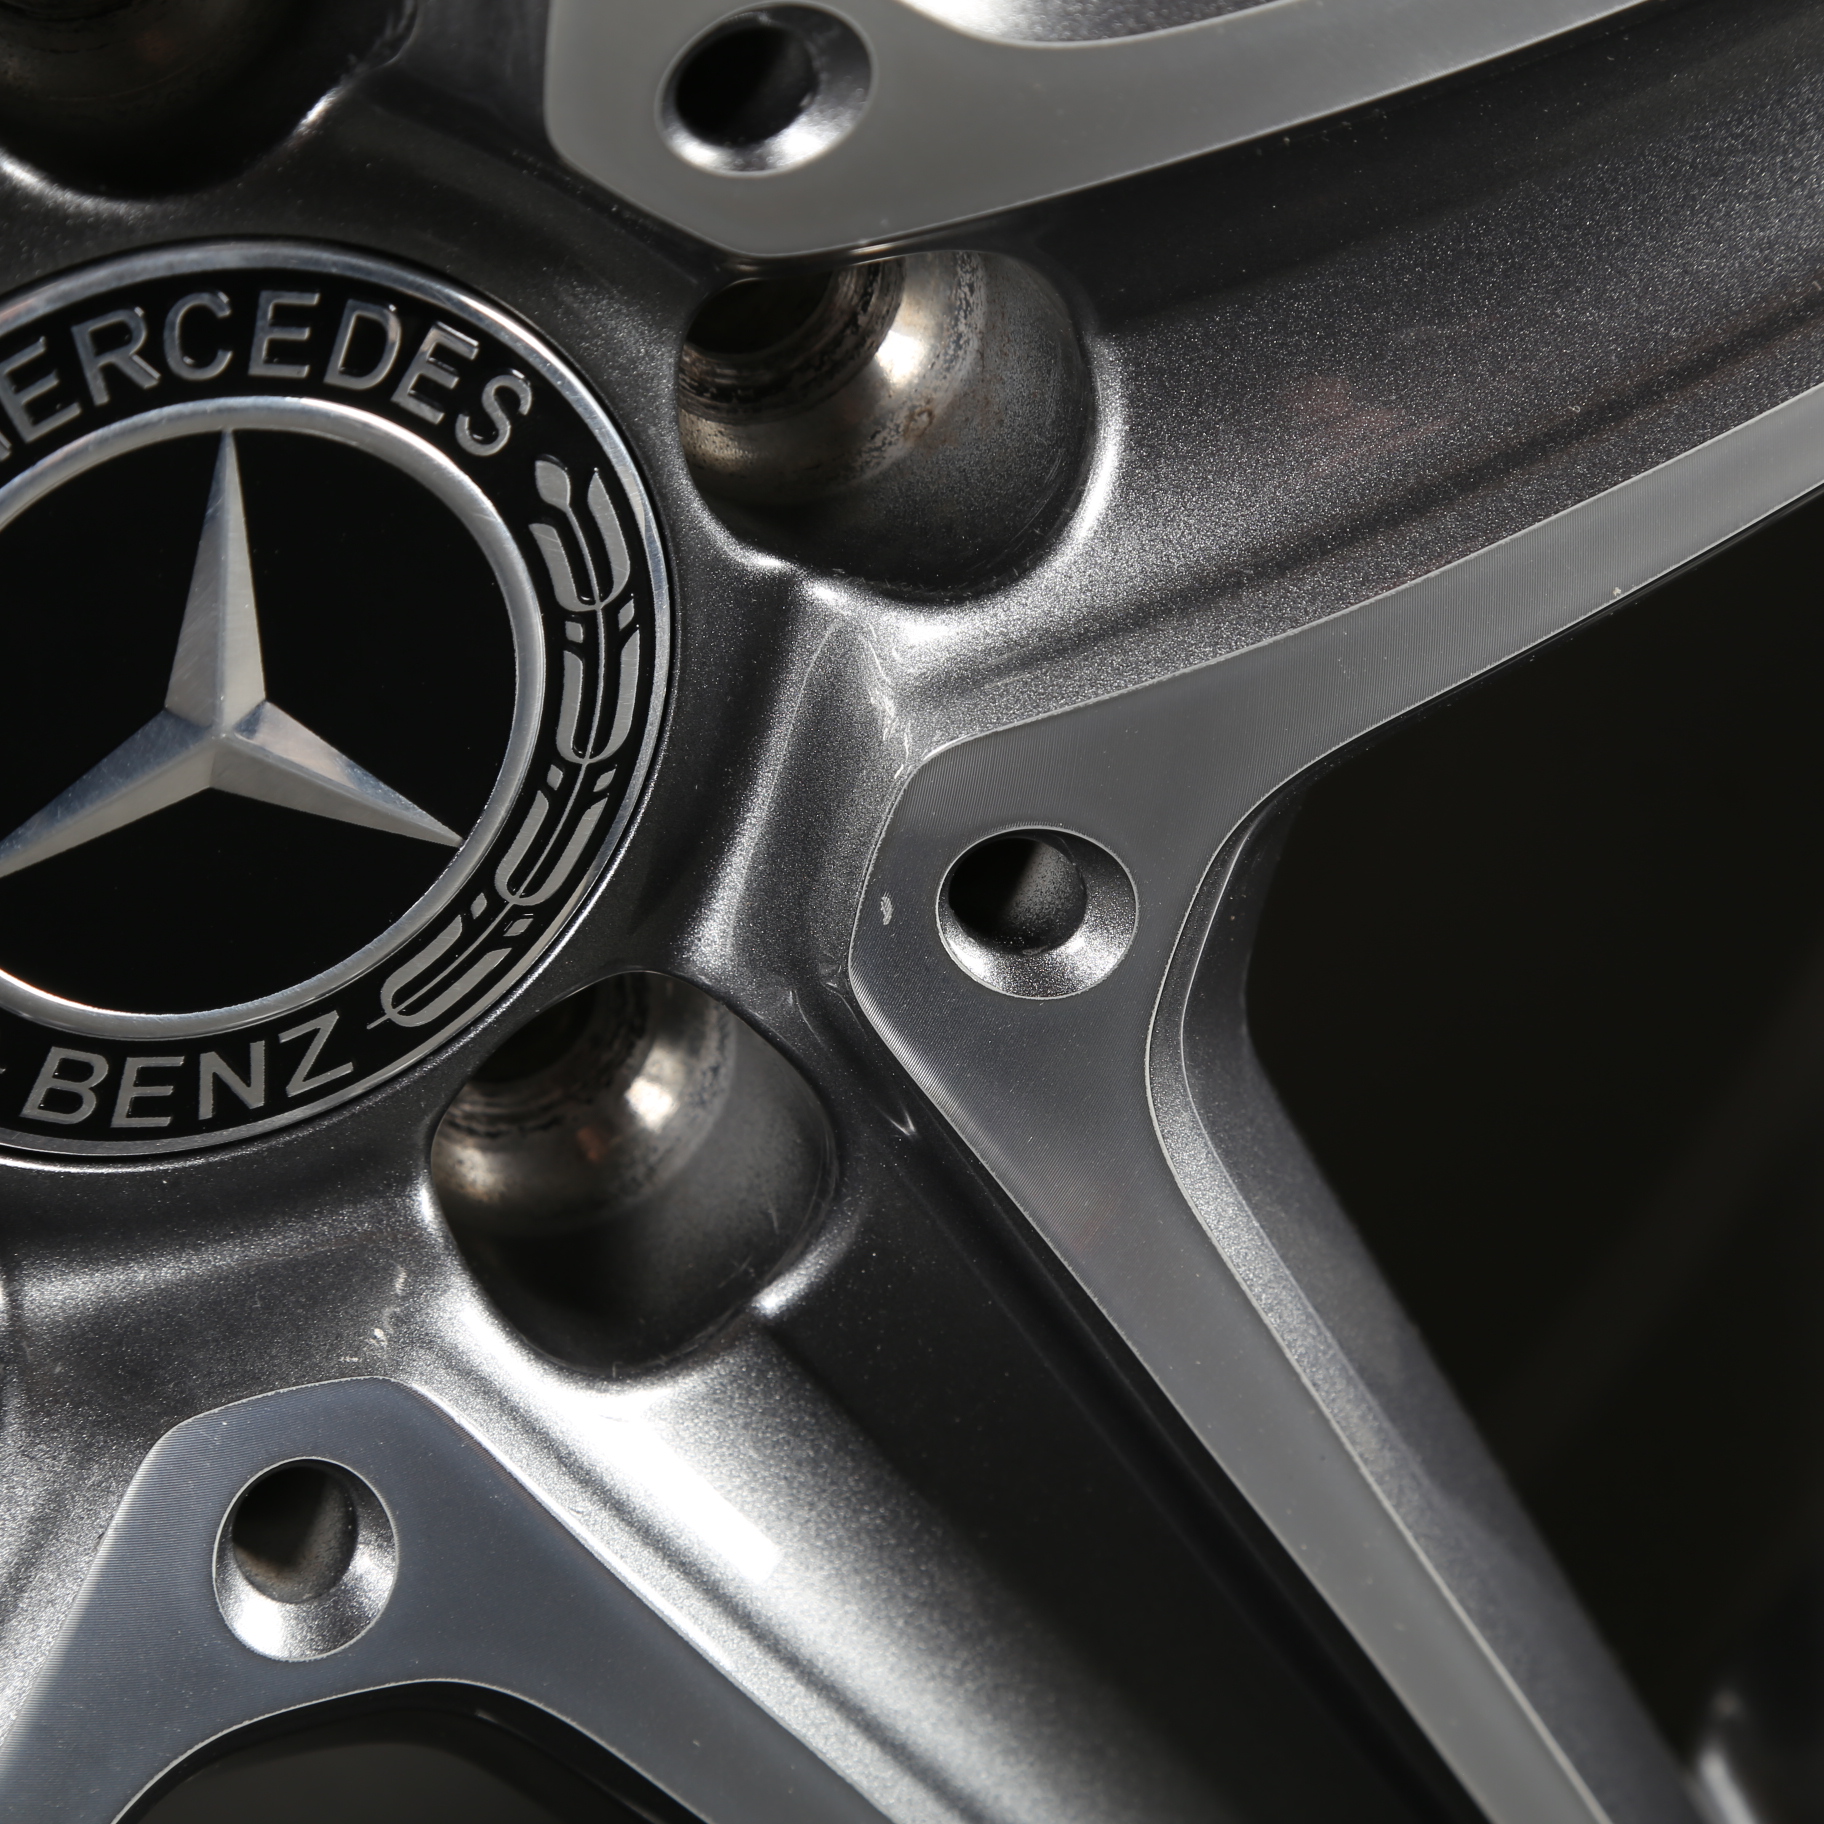 18 pouces roues d'été Mercedes AMG Classe E W213 S213 C238 A2134011800